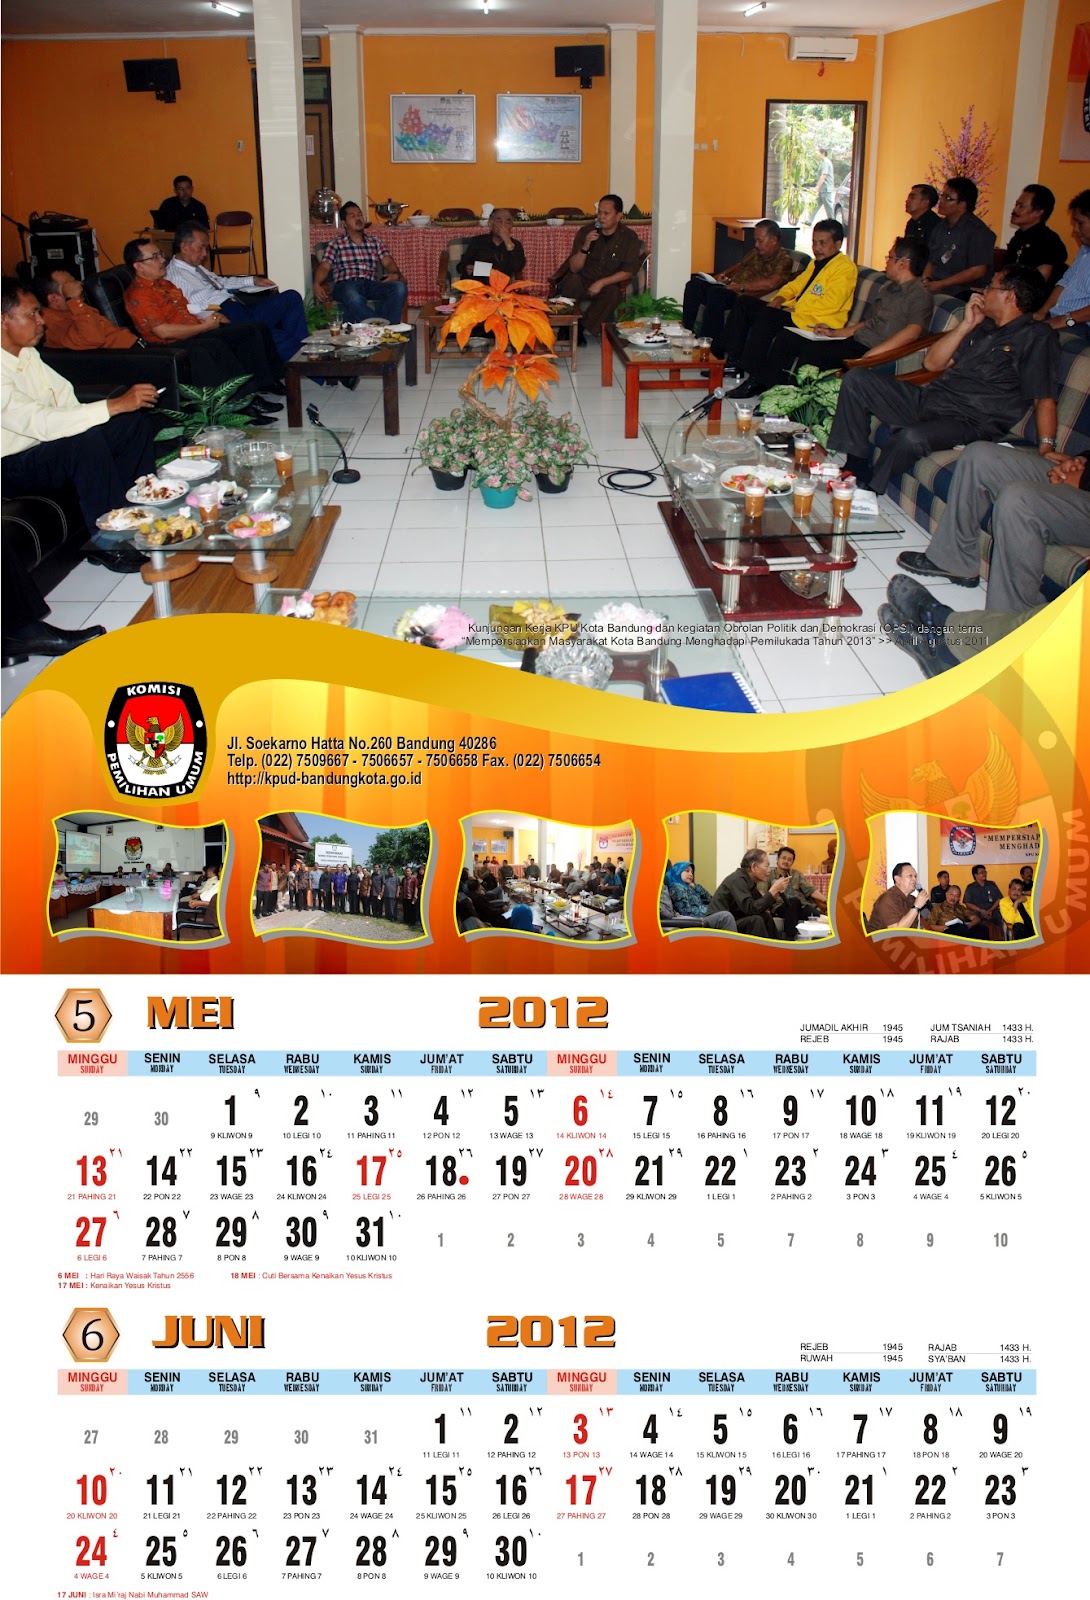 Pengadaan Kalender Agenda dan Plakat Di KPU Kota Bandung 